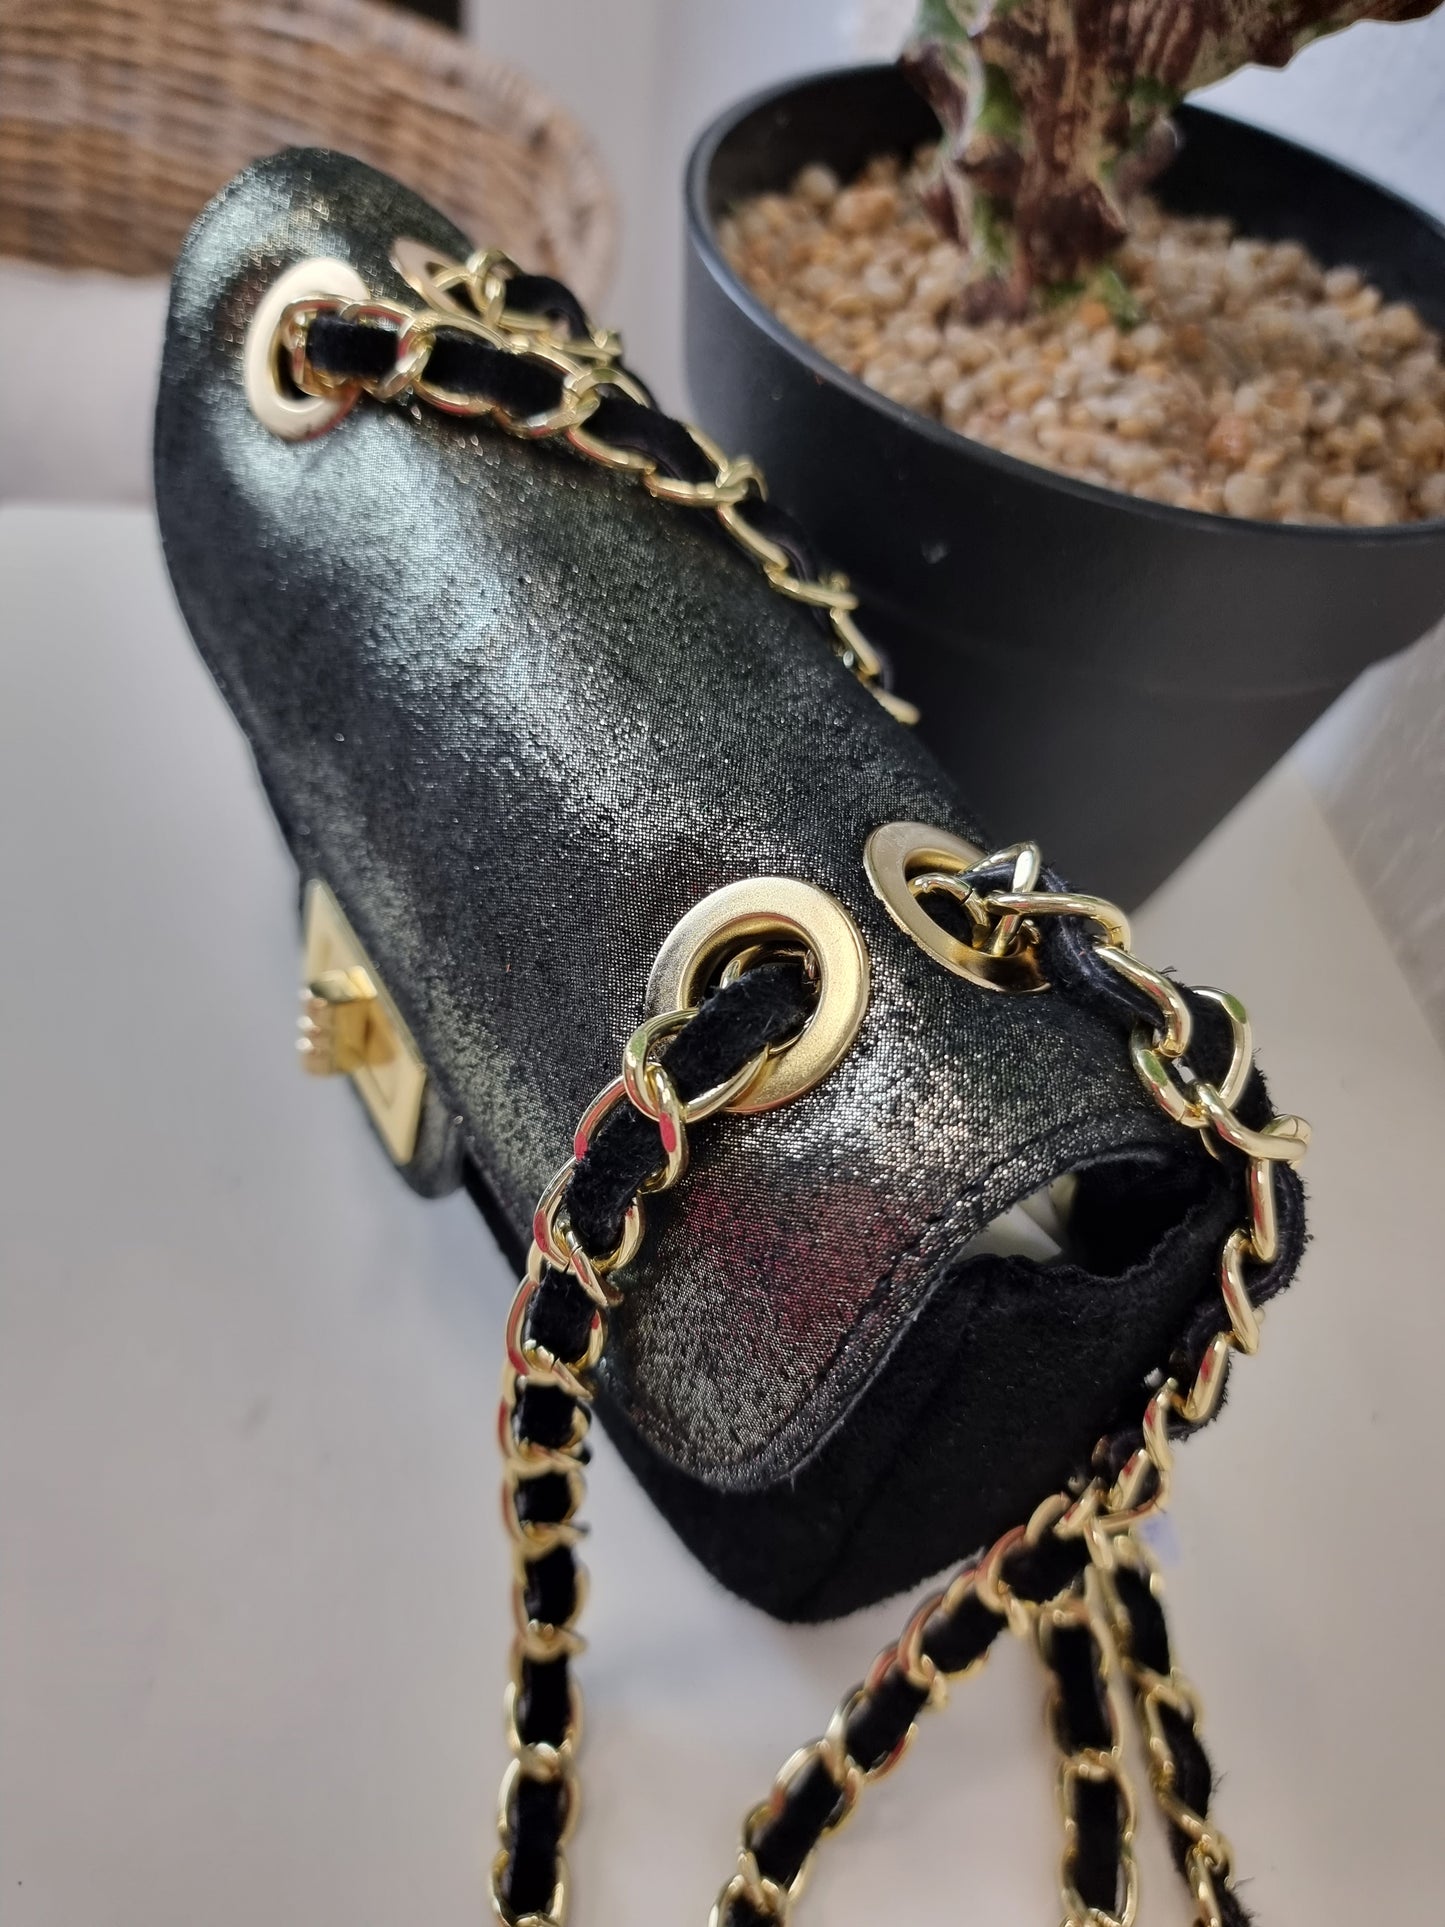 Handtasche Velourleder mit Goldketten und Glitzer in verschiedenen Farben